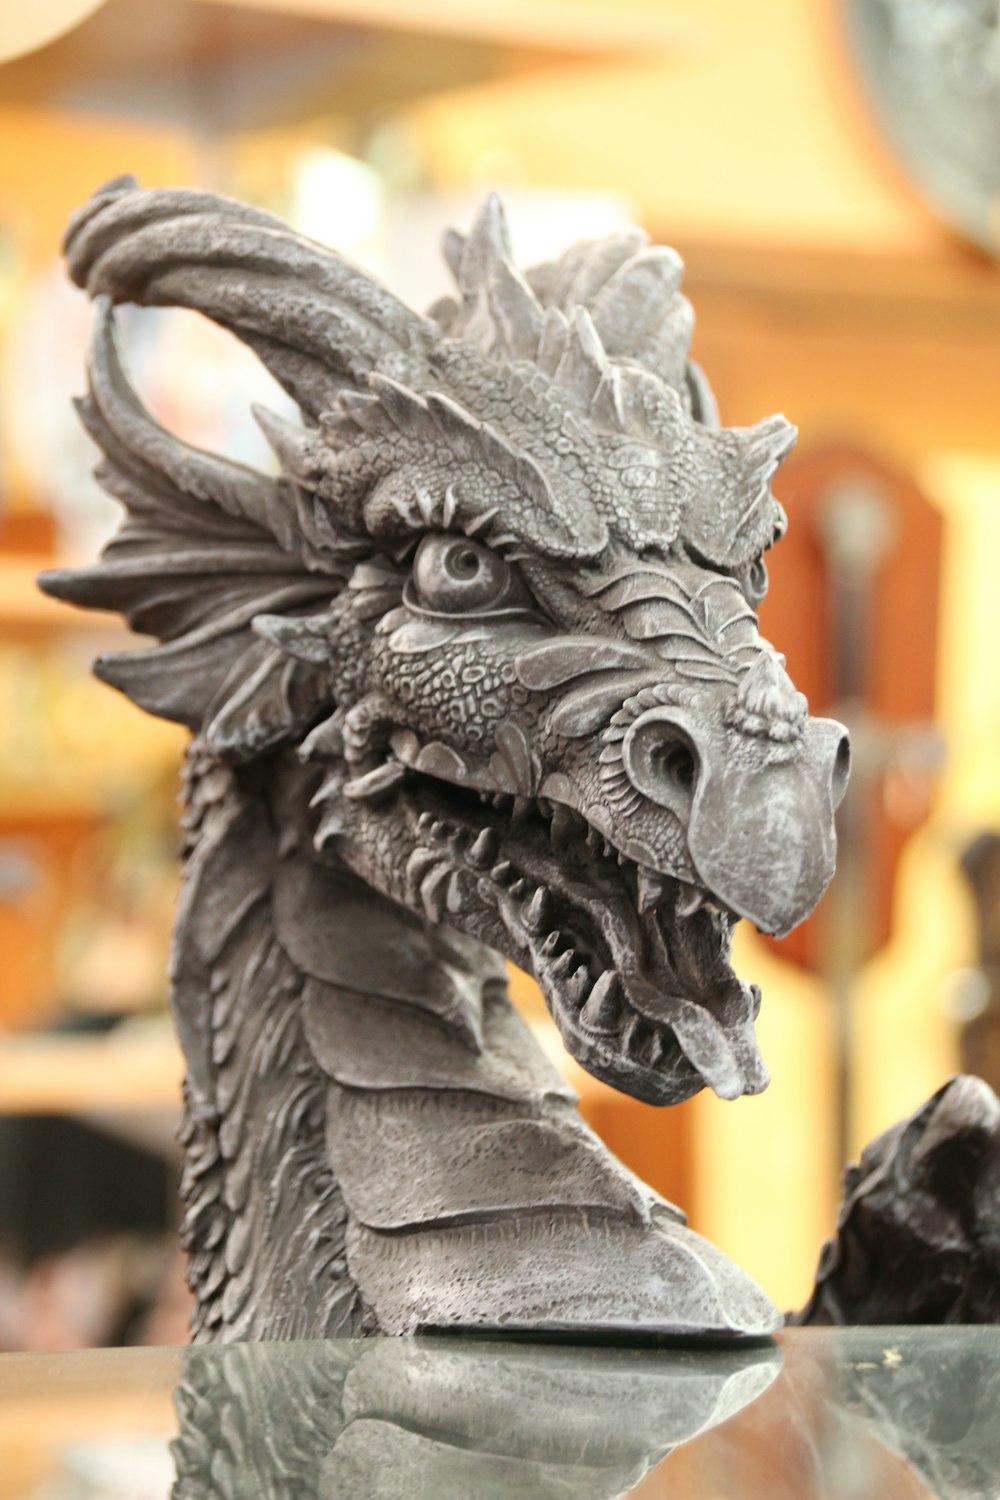 gray dragon statue in tilt shift lens